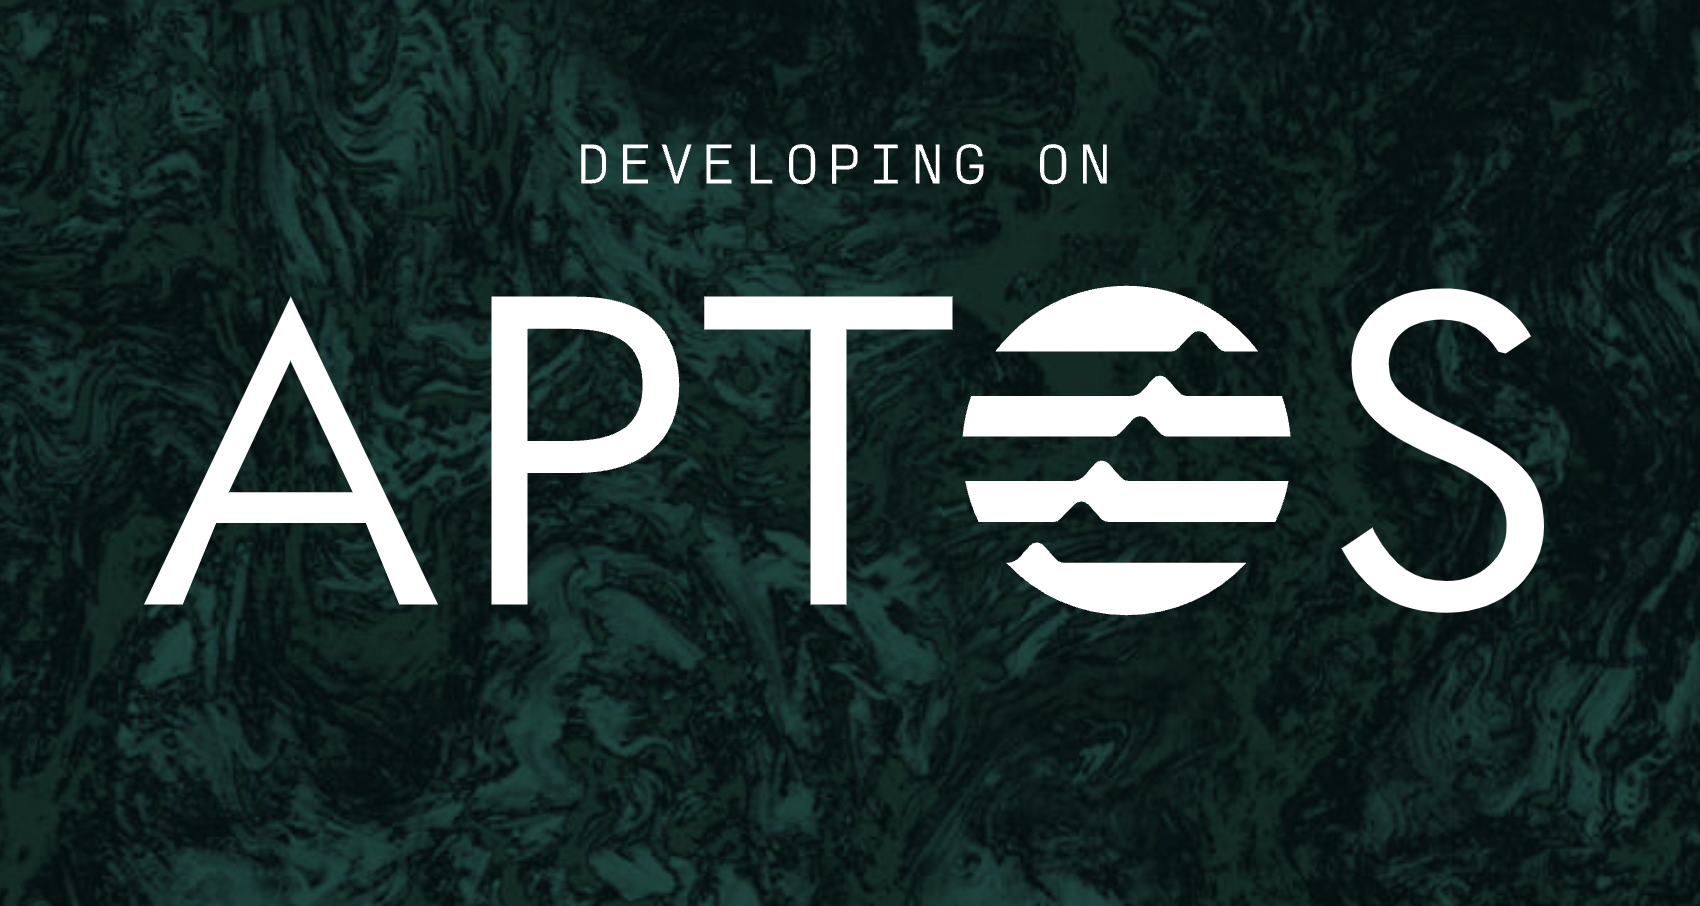 Aptos logo from the company's website.